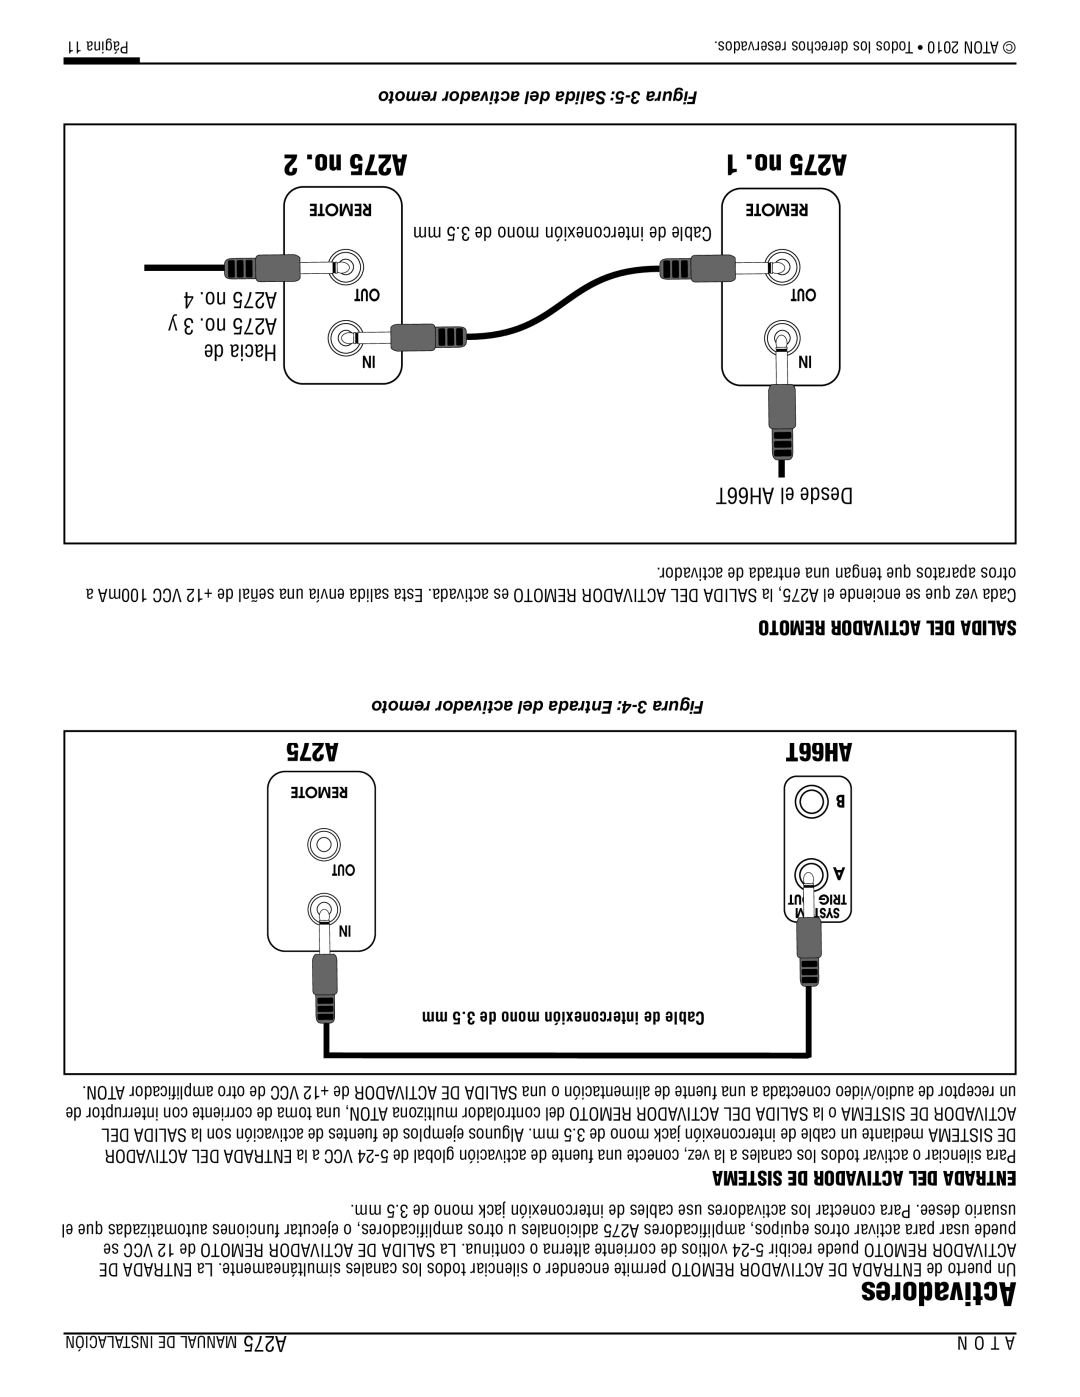 ATON installation manual no A275, de Hacia, AH66T el Desde, mm 5.3 de mono interconexión de Cable 